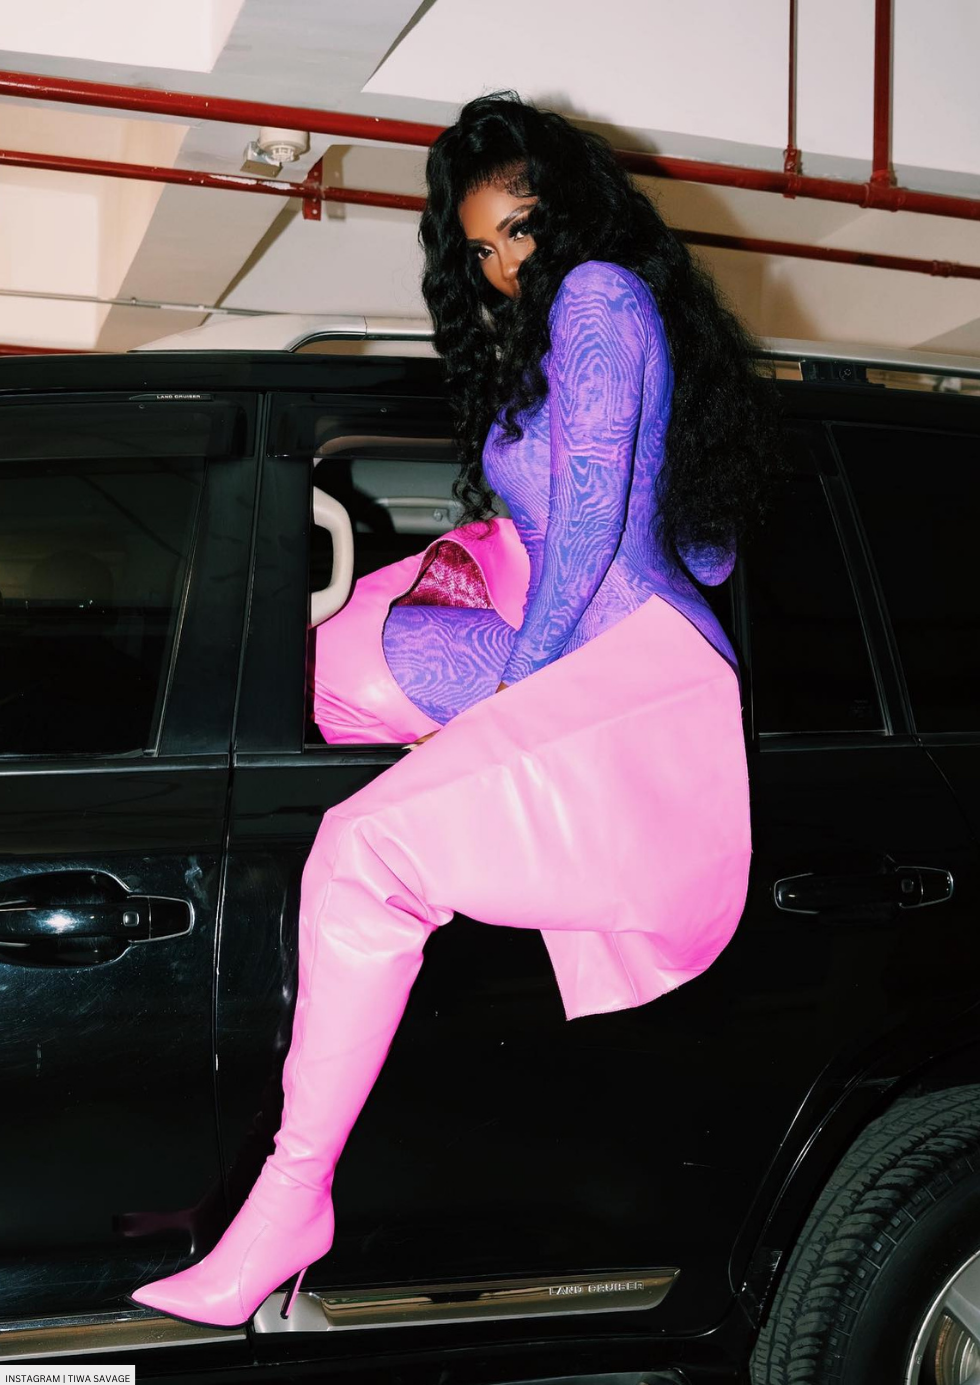 Tiwa Savage’s Perfect Purple And Pink Look